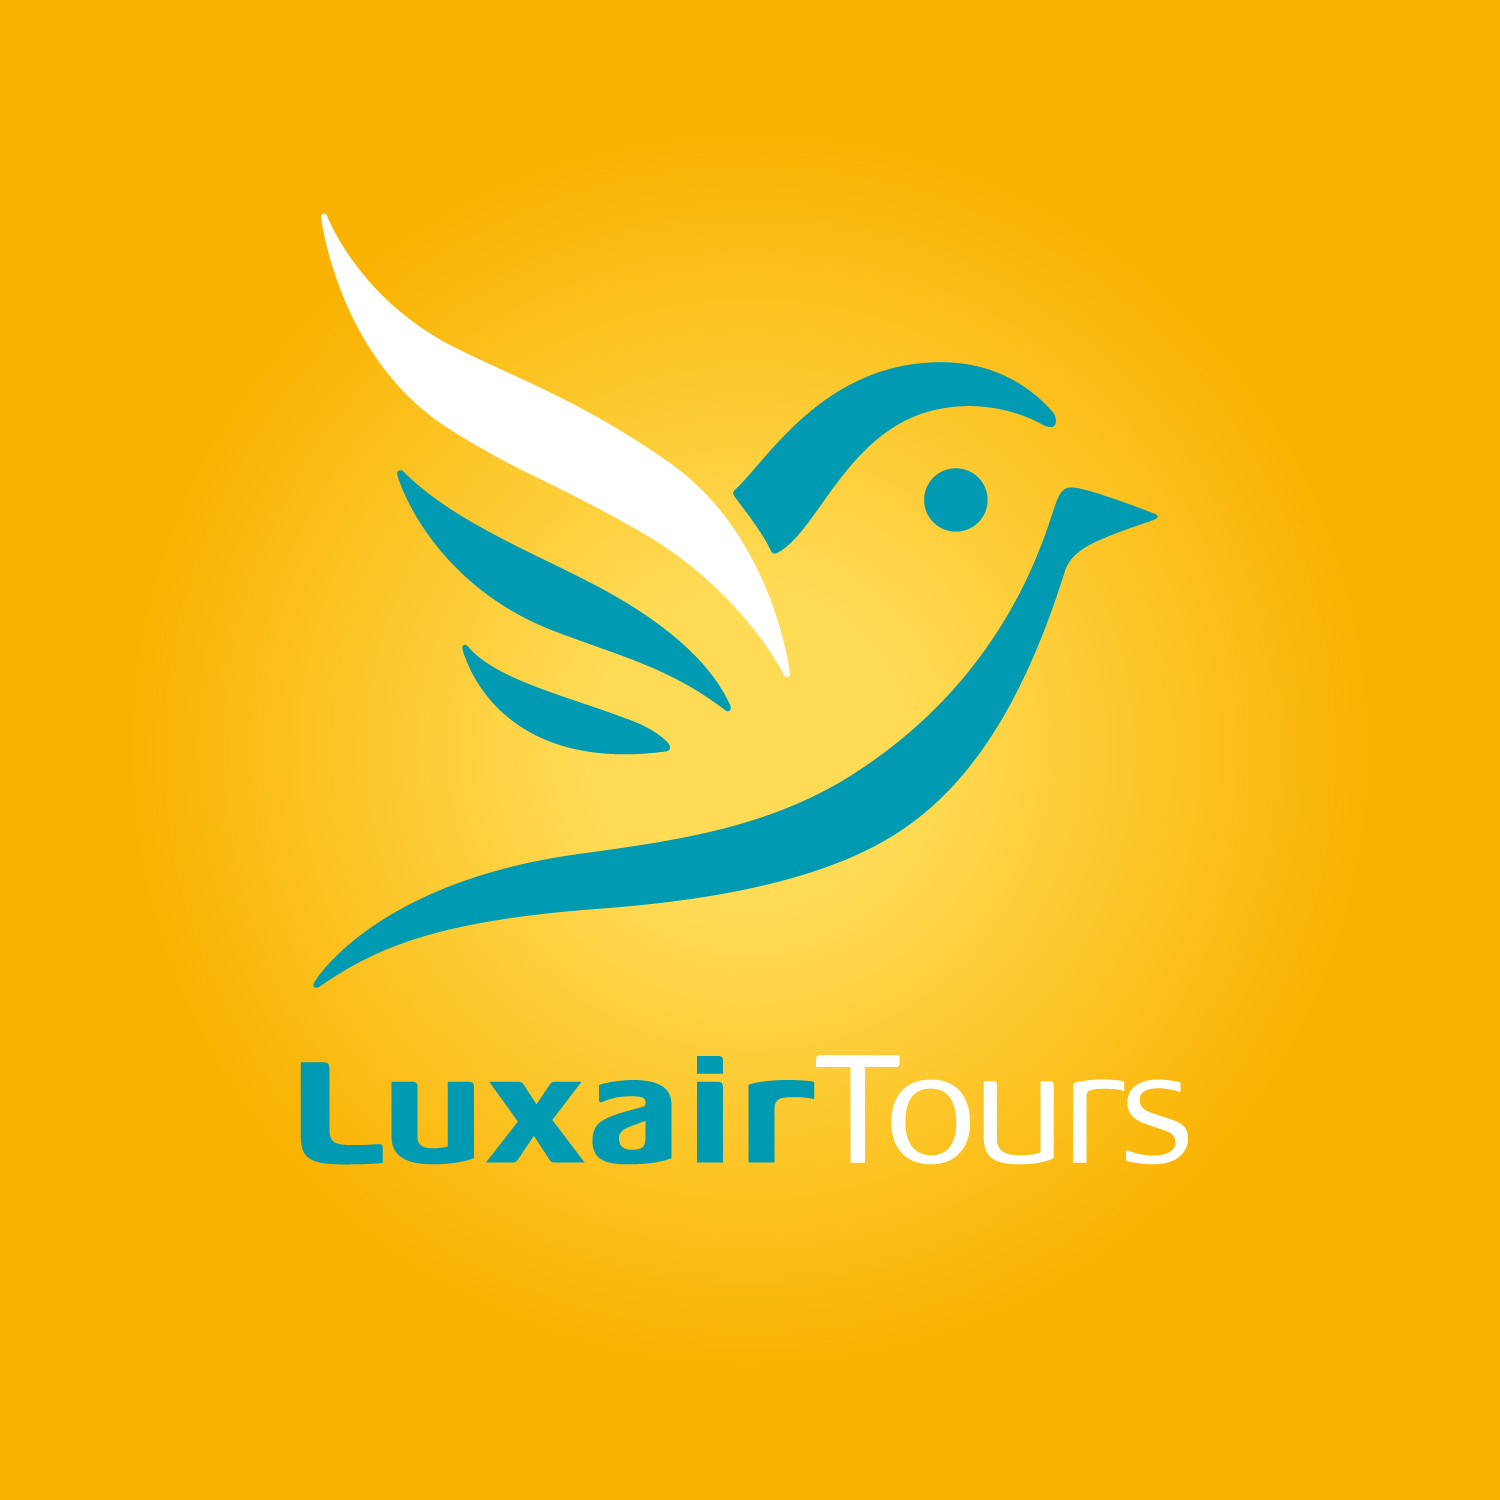 luxair tours buchungsnummer